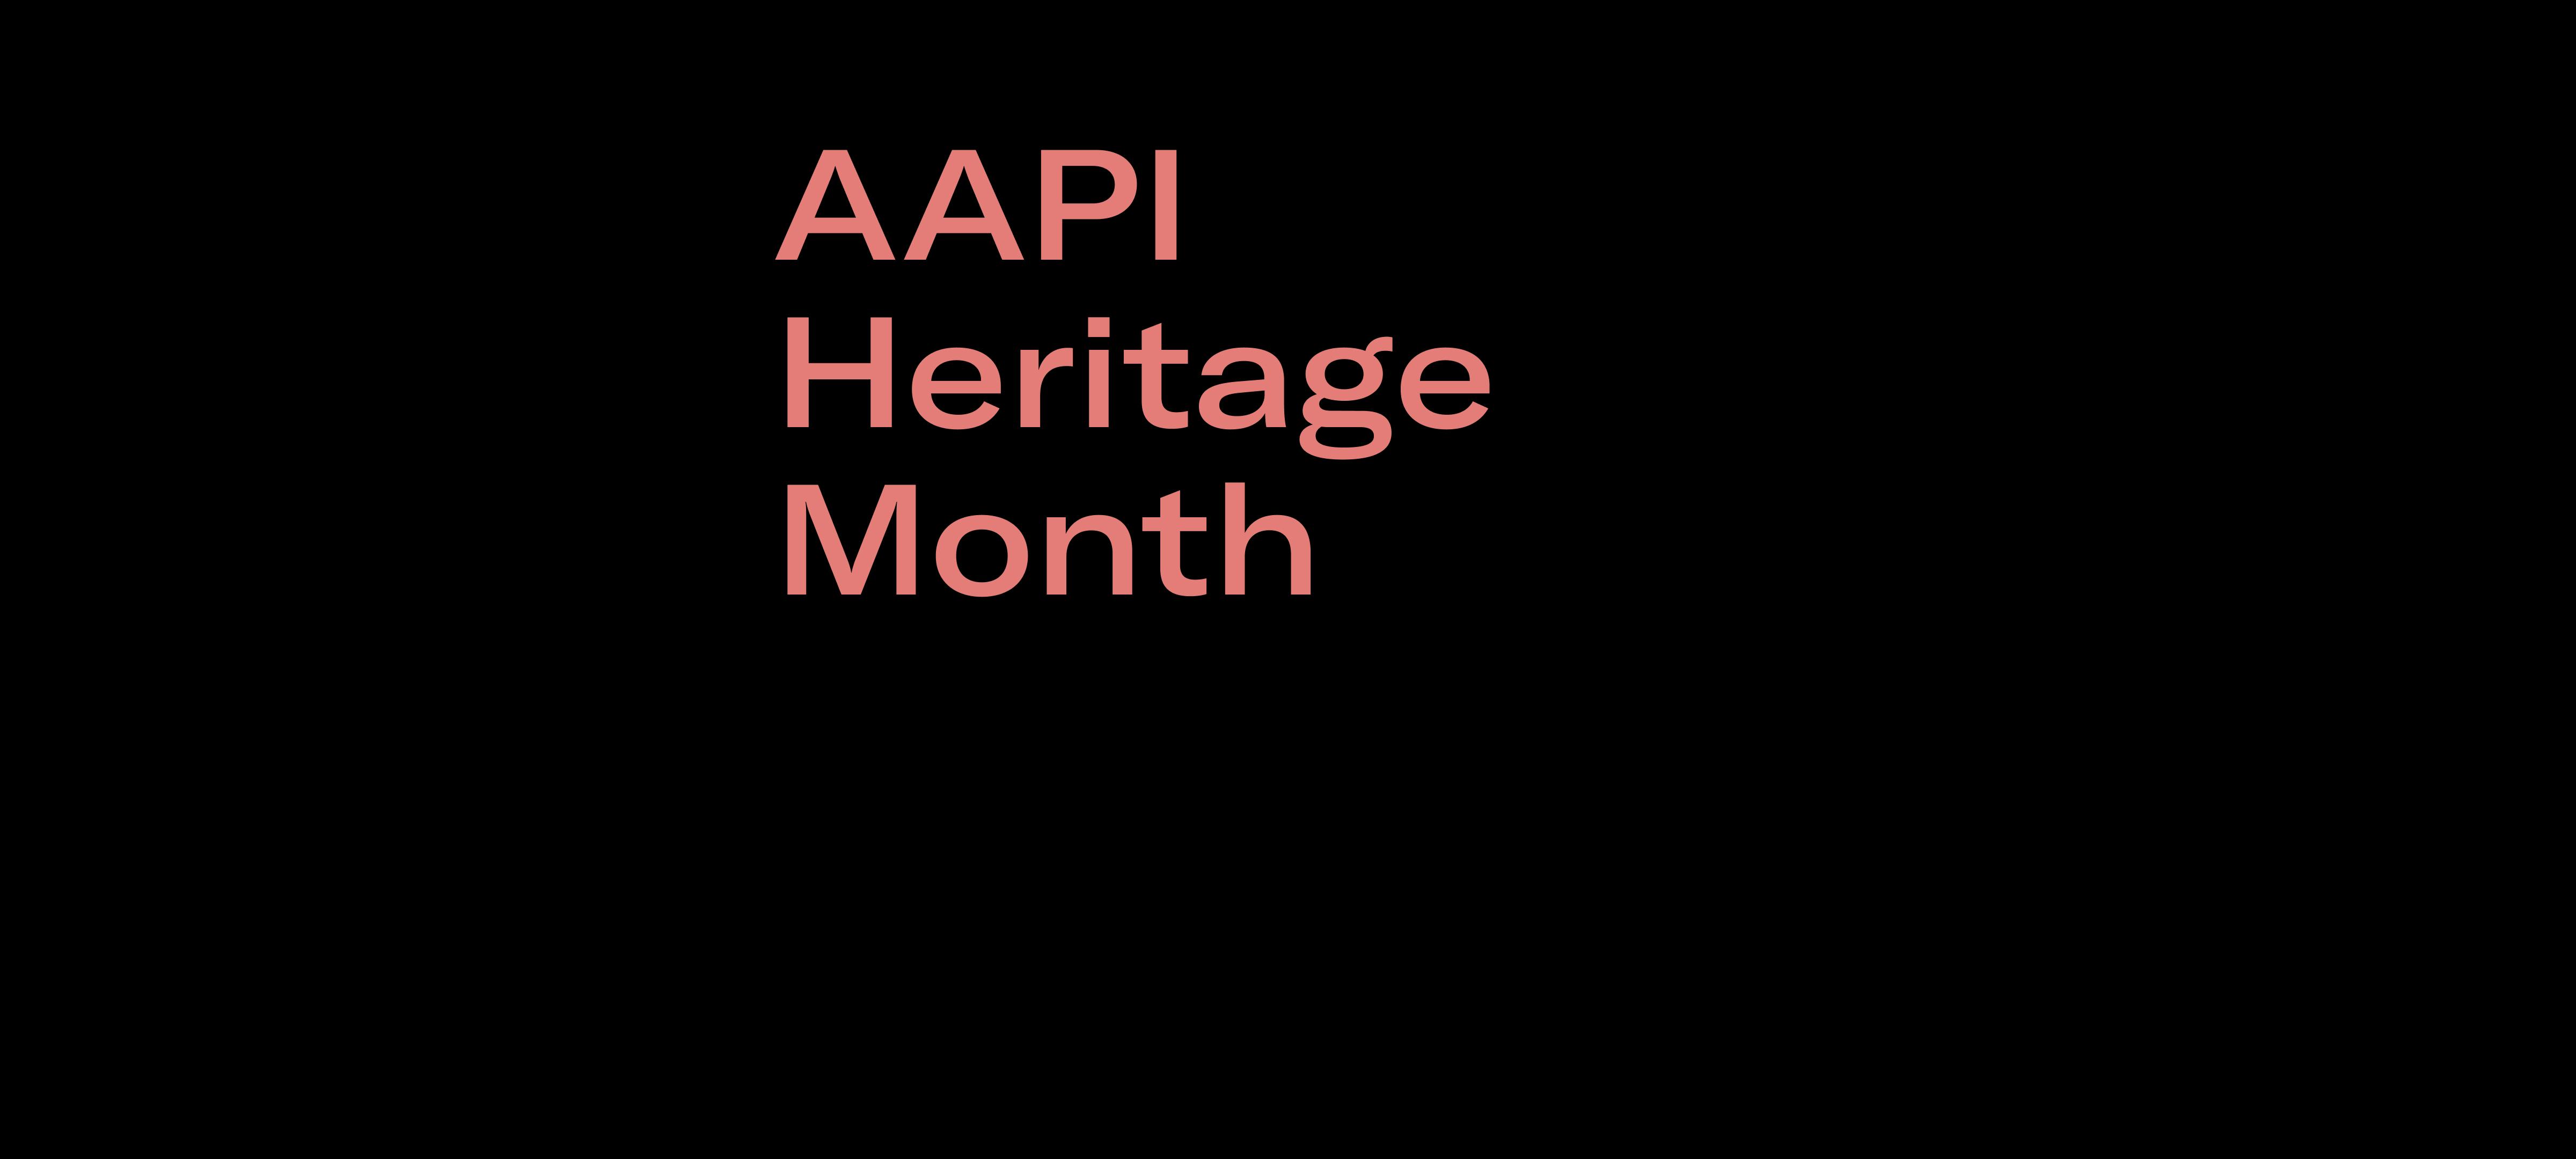 AAPI Heritage Month: Week 1